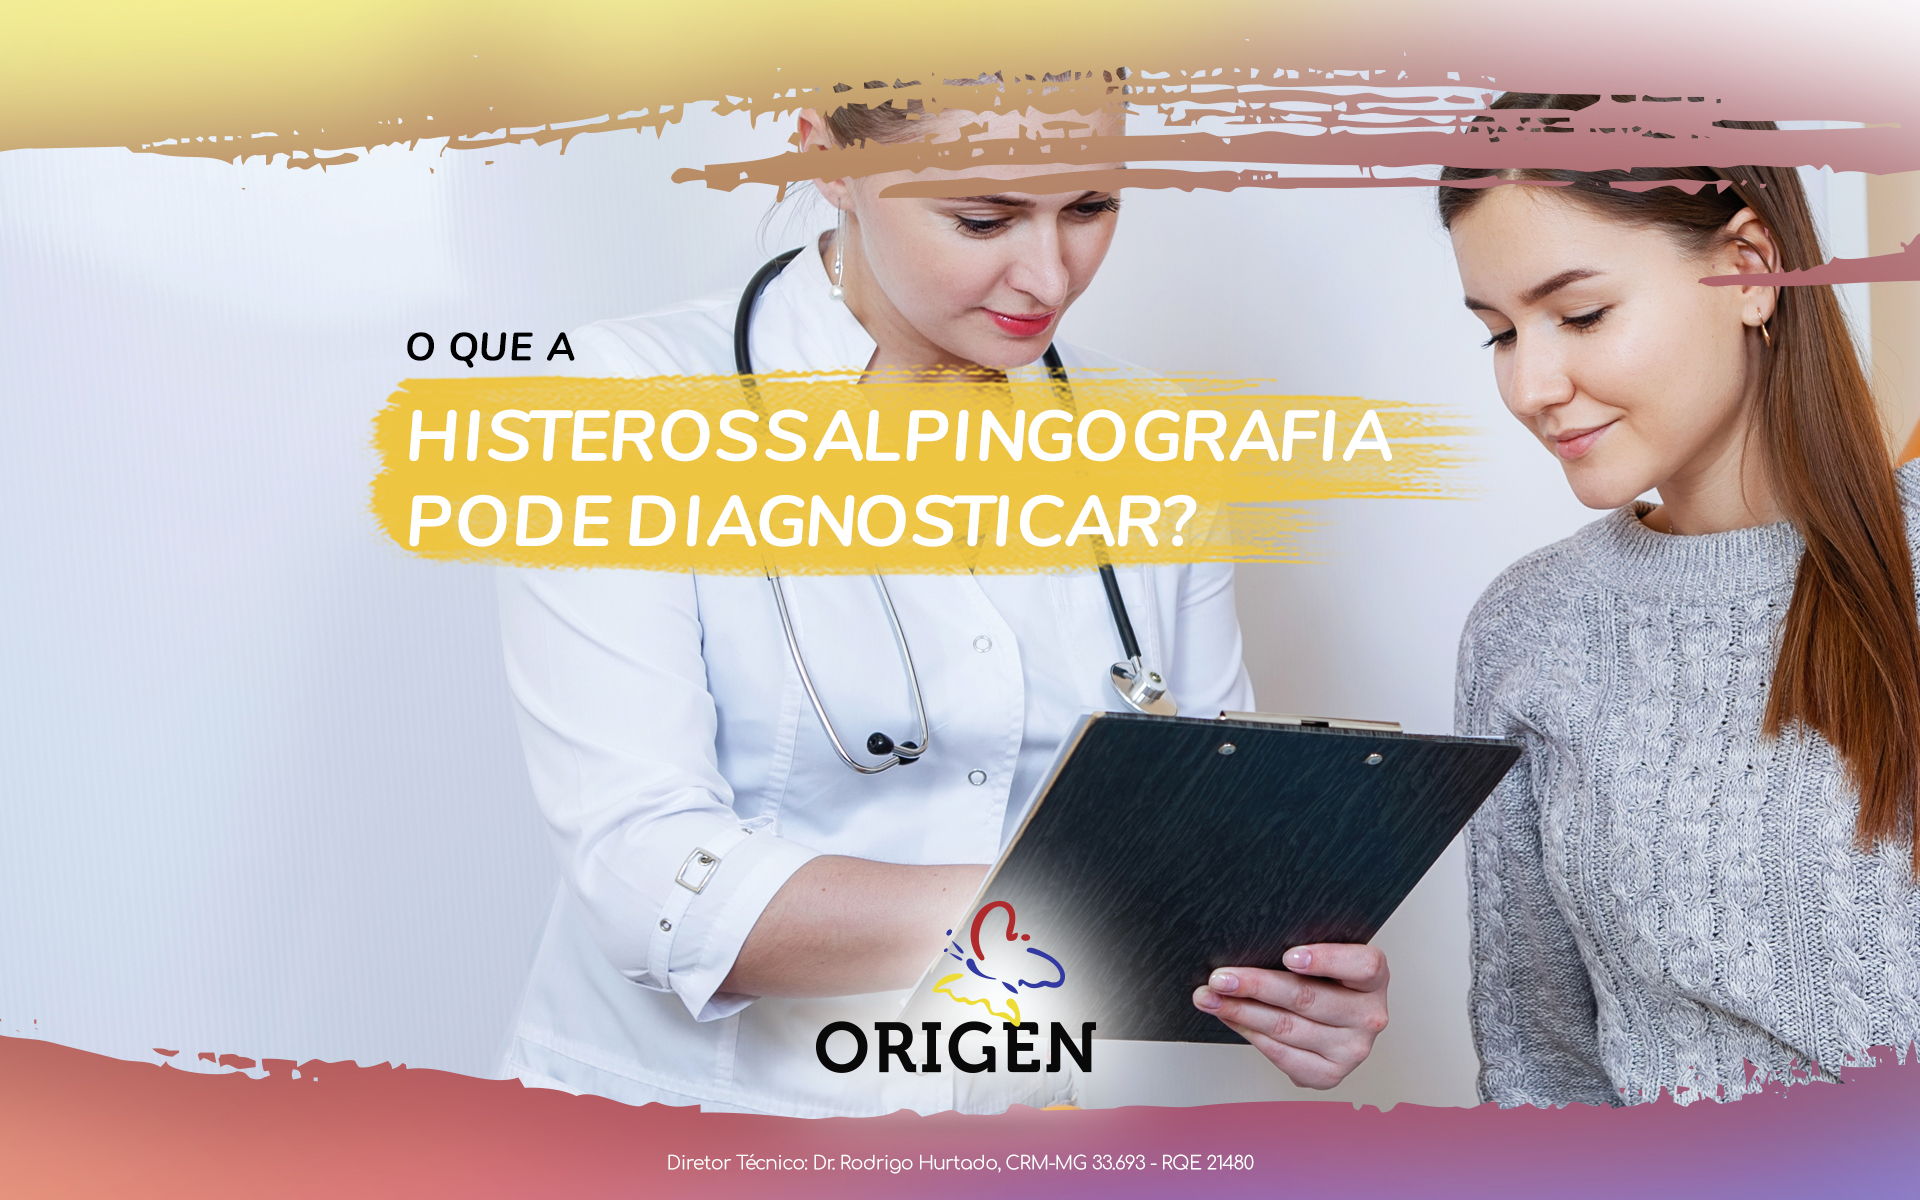 O que a histerossalpingografia pode diagnosticar?